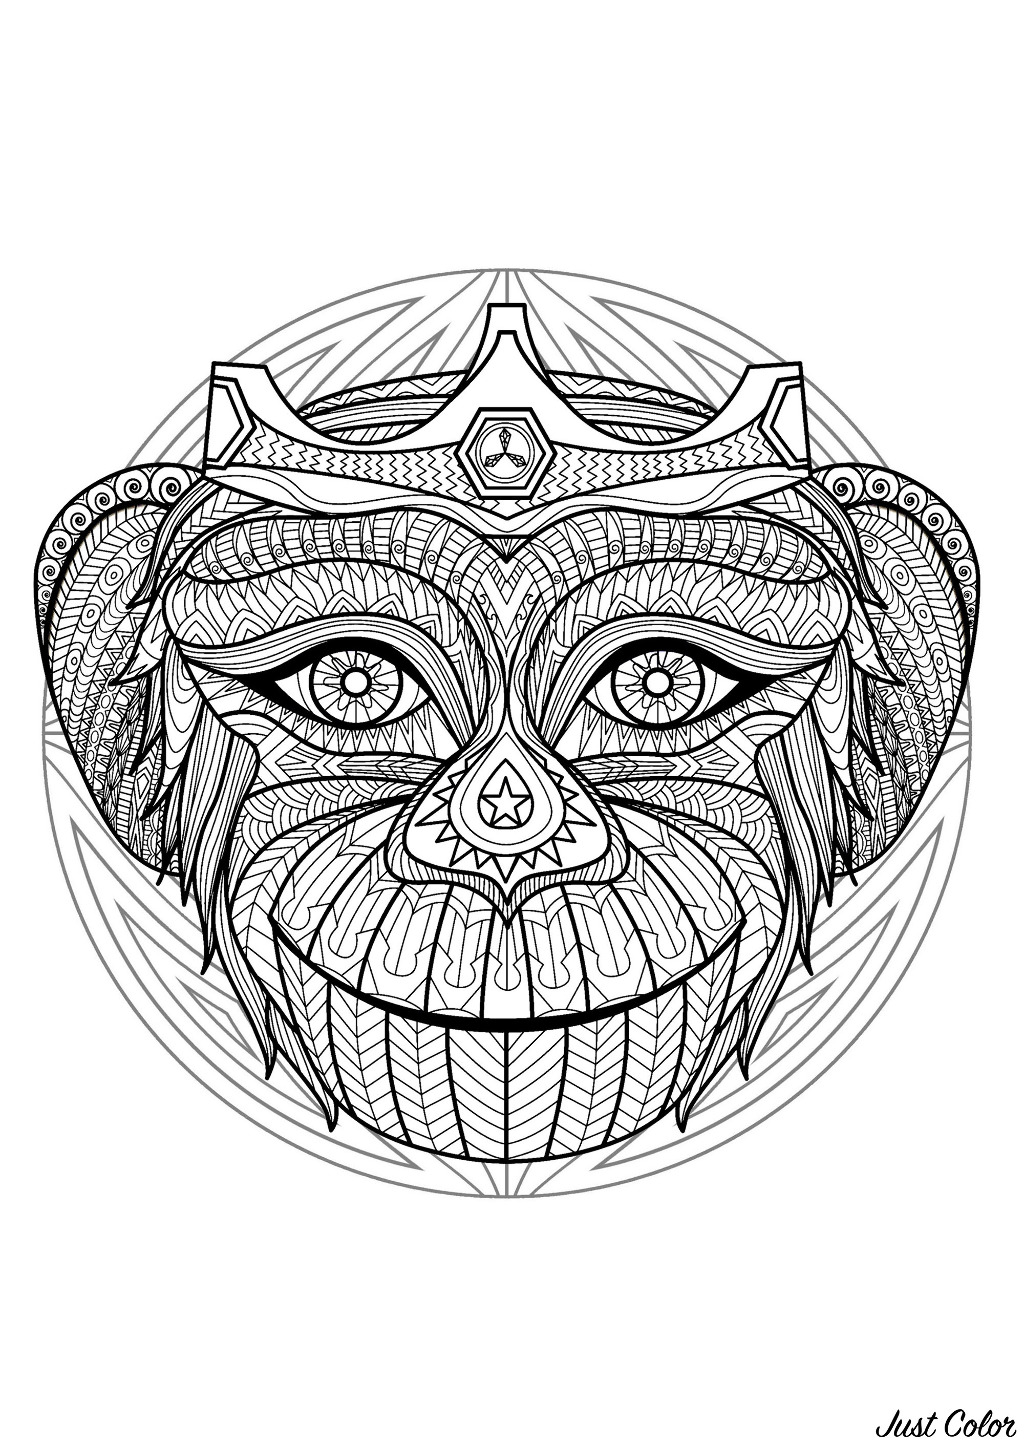 Un Mandala mettant en scène un singe espiègle, pour ceux qui préfèrent mettre en couleur des éléments concrets et vivants. Rétablir la paix en nous, devenir plus créatifs, développer une qualité, favoriser le lâcher prise… C'est ce que permettent les Mandalas.